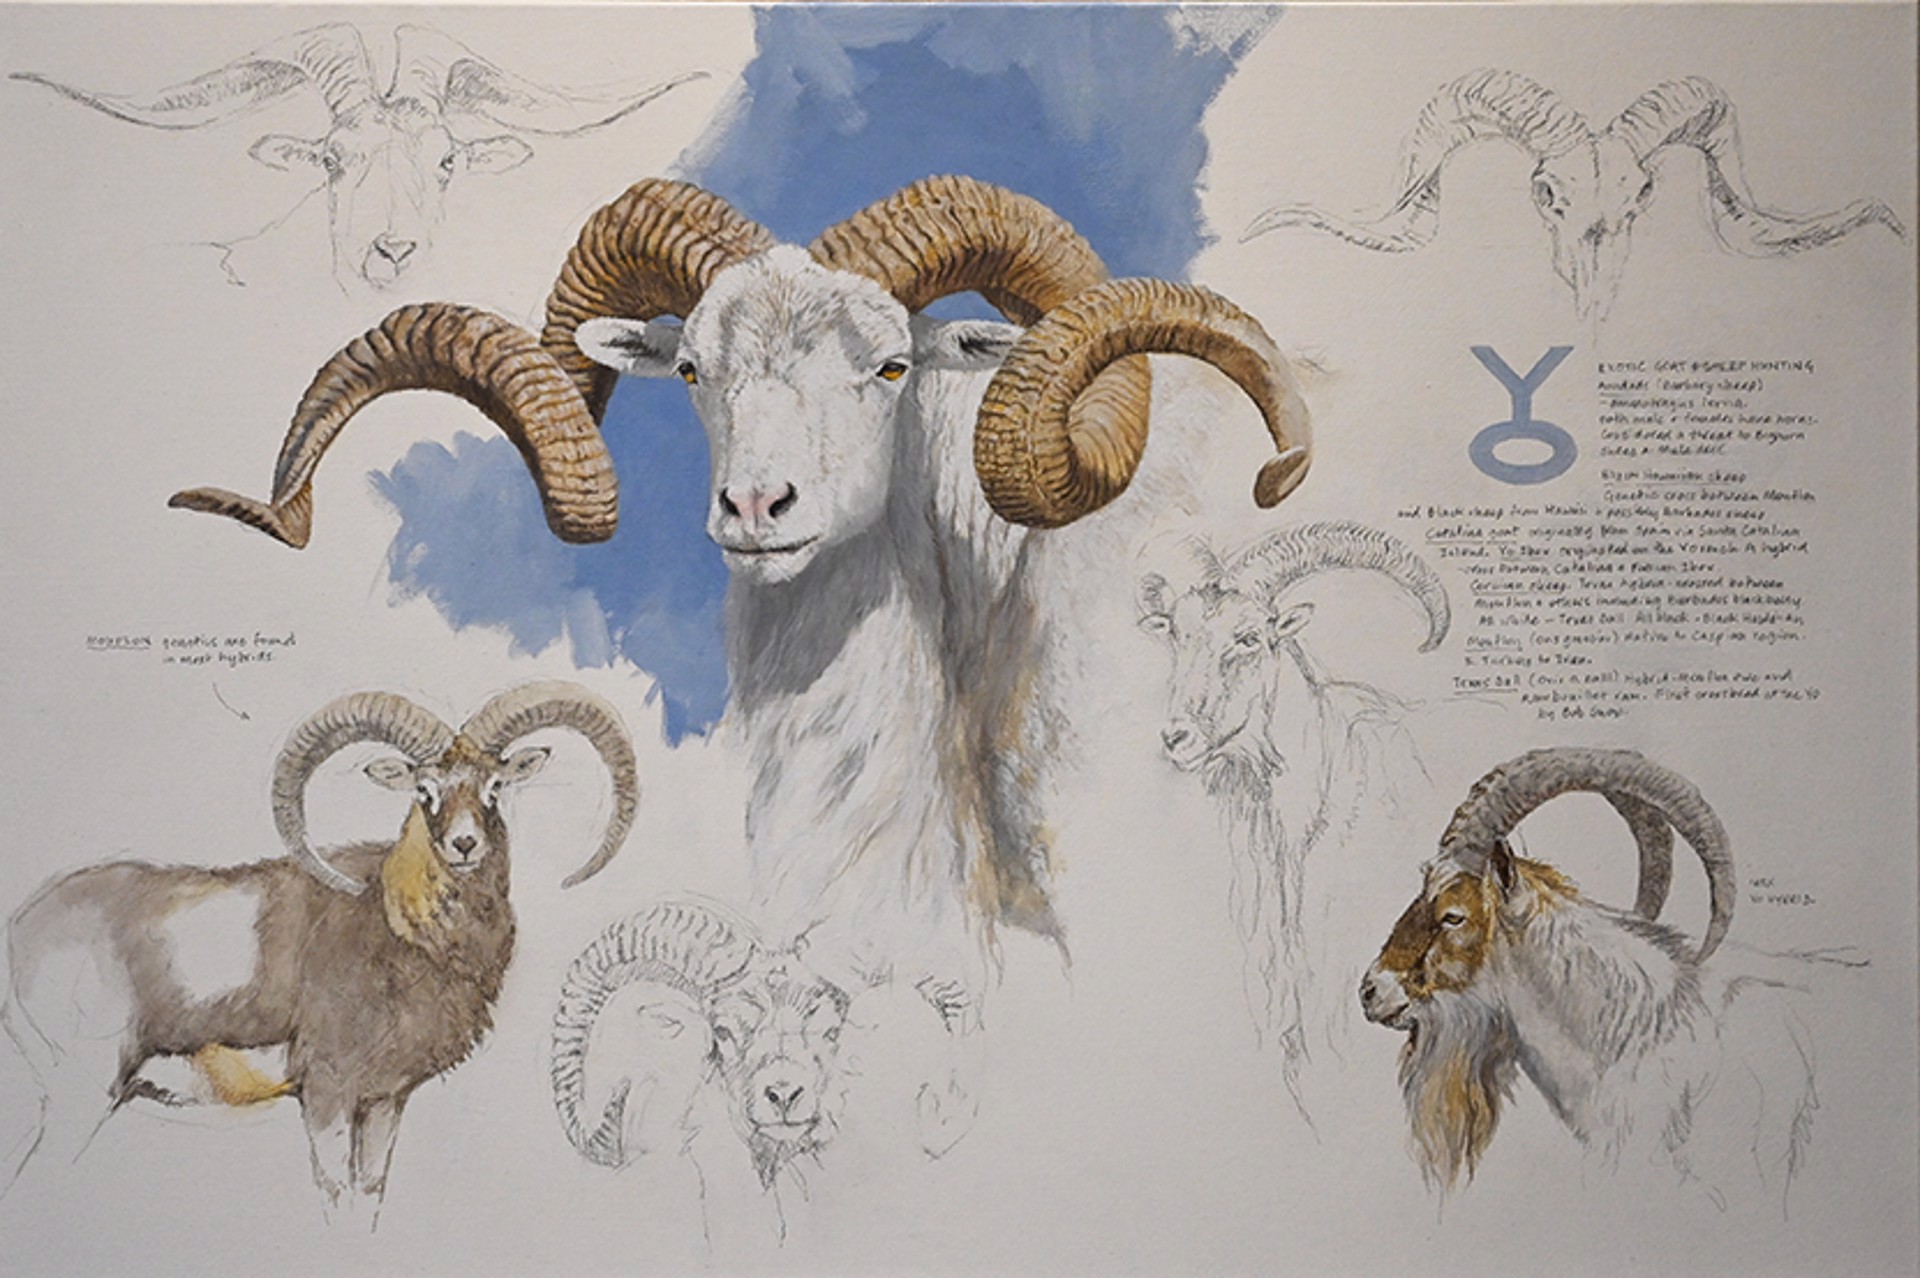 Sheet & Goat Montage by Kim Donaldson